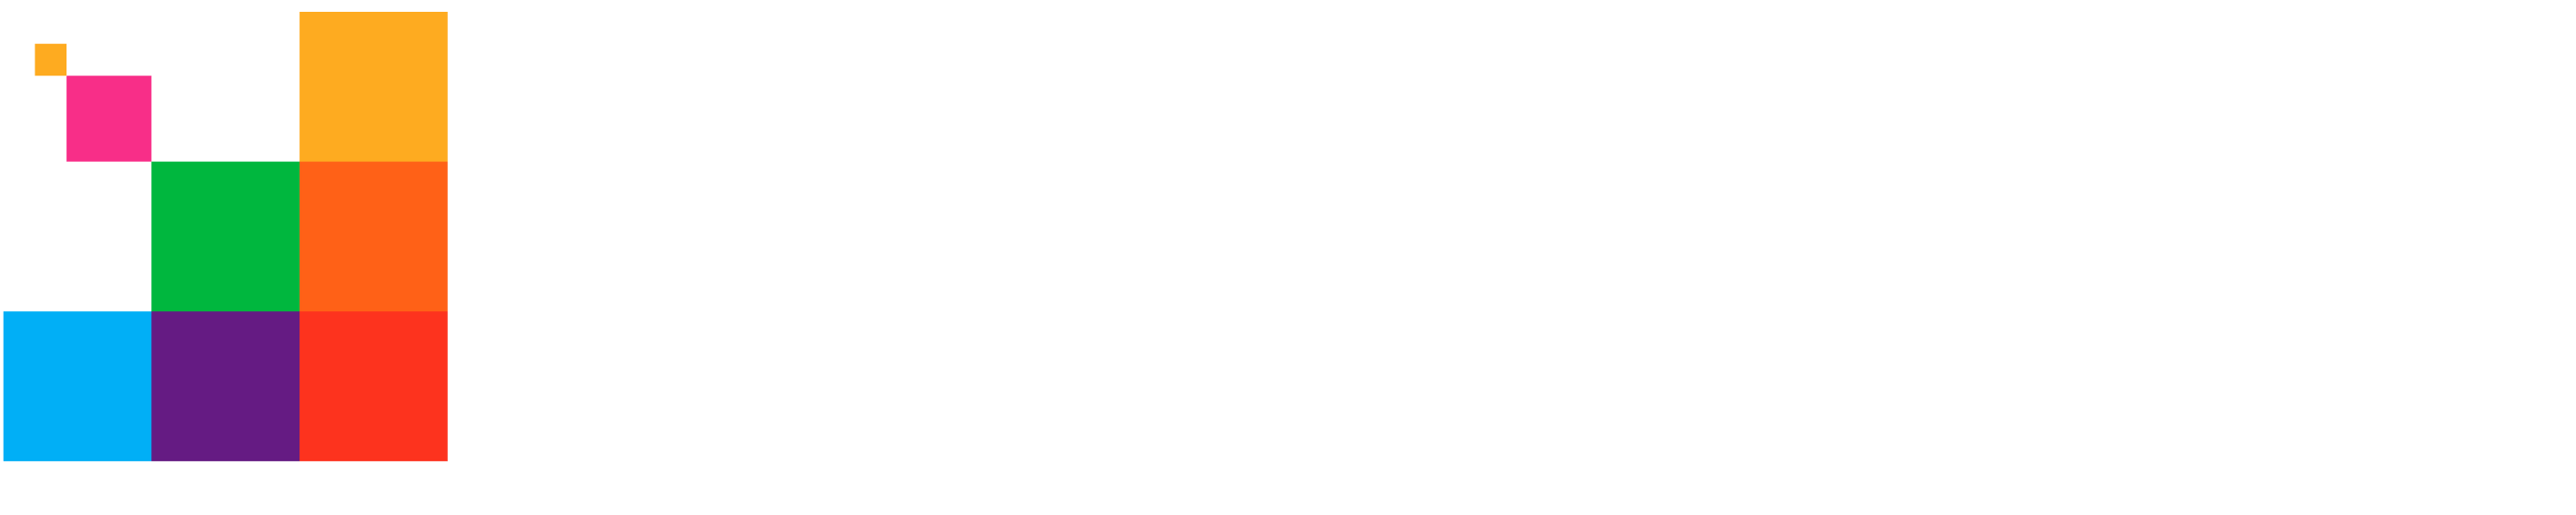 Pixelstrap